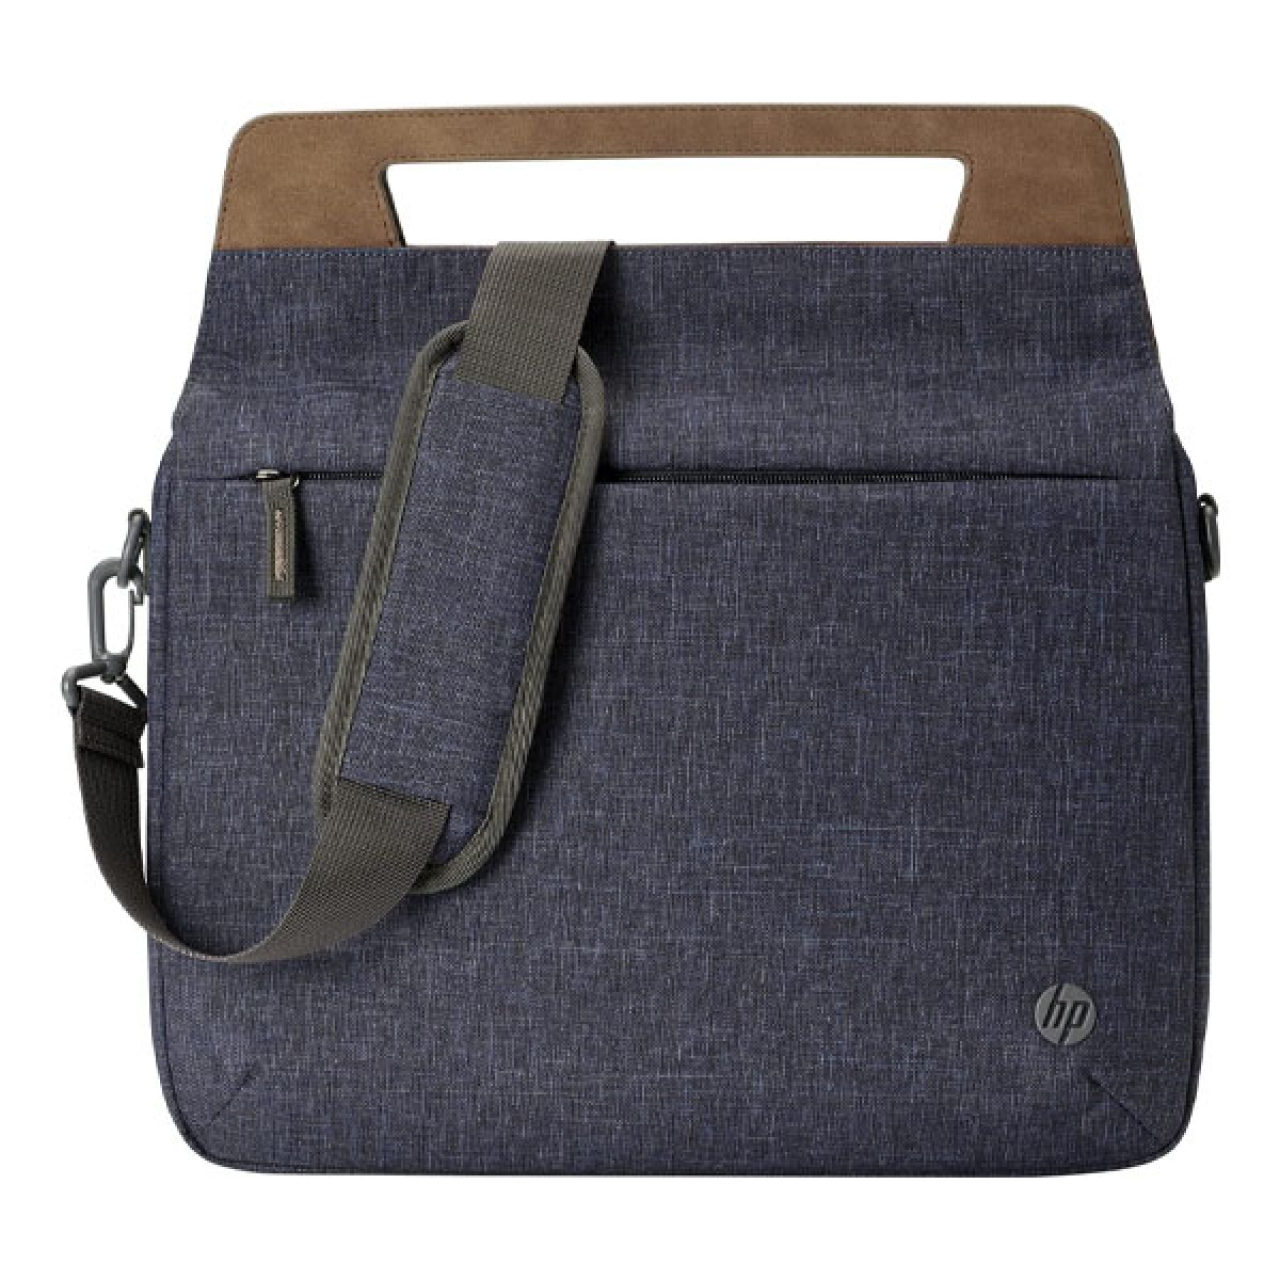 کیف دستی لپ تاپ اچ پی مدل Renew Slim Briefcase